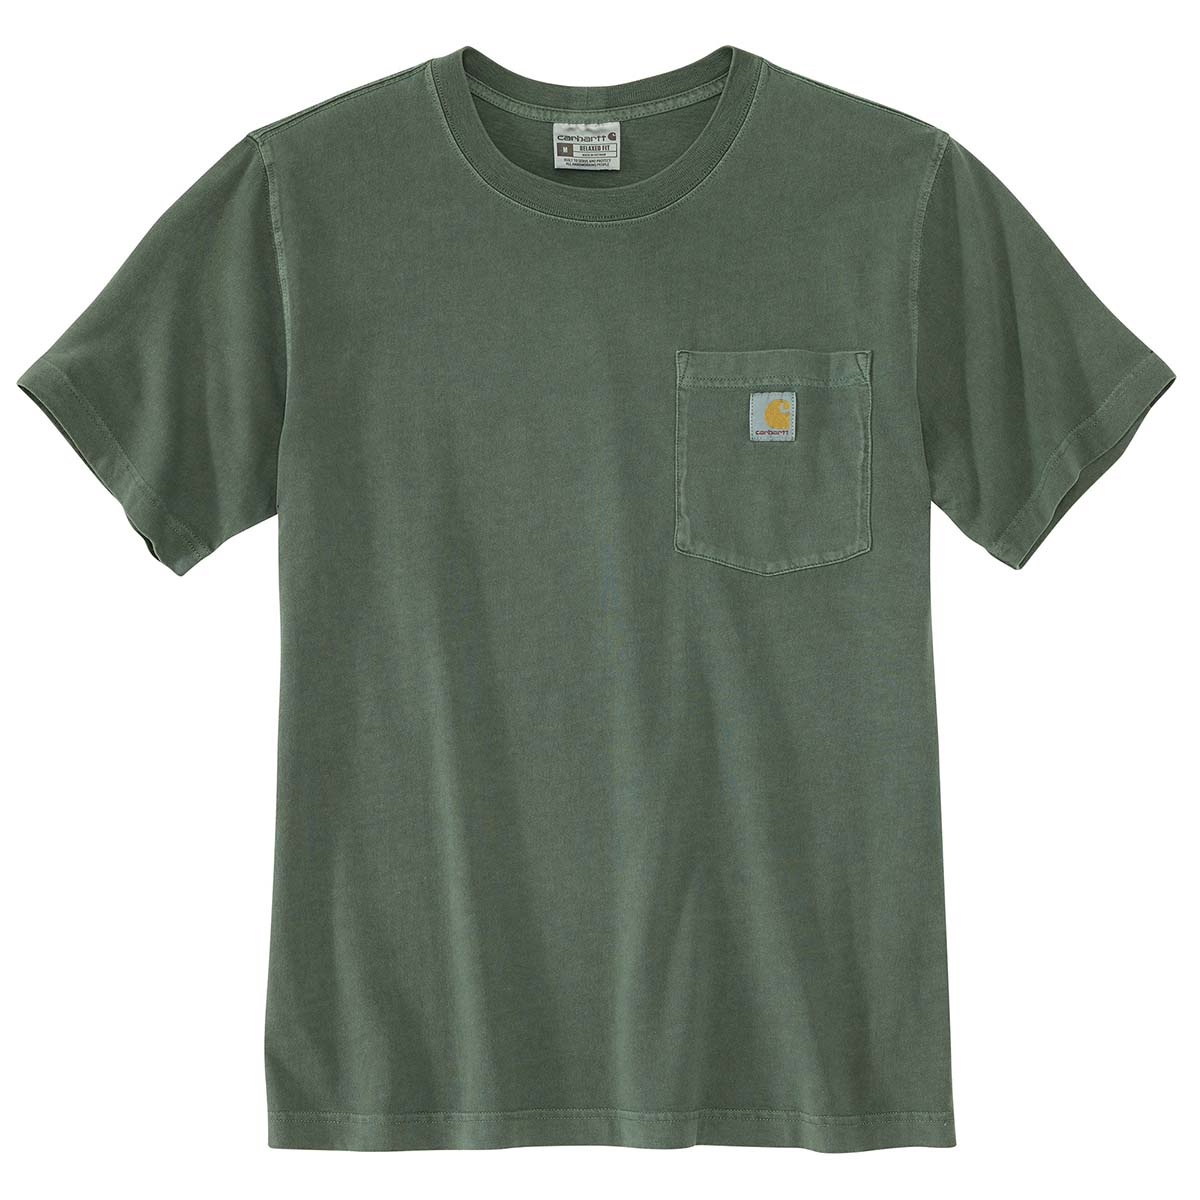 Carhartt Men's Re-Engineered Relaxed Fit Lightweight Short-Sleeve Garment Dyed Pocket T-Shirt